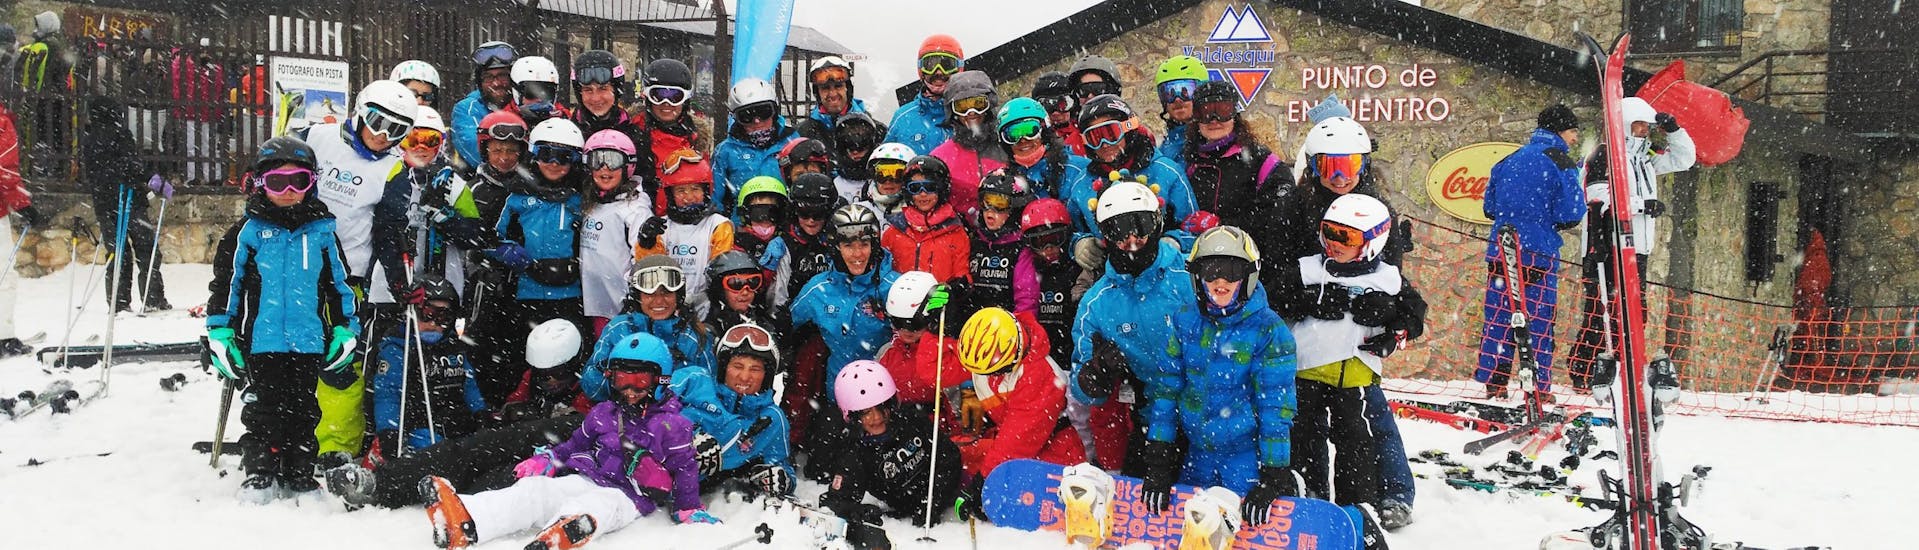 Kinder-Skikurs ab 15 Jahren für Anfänger.